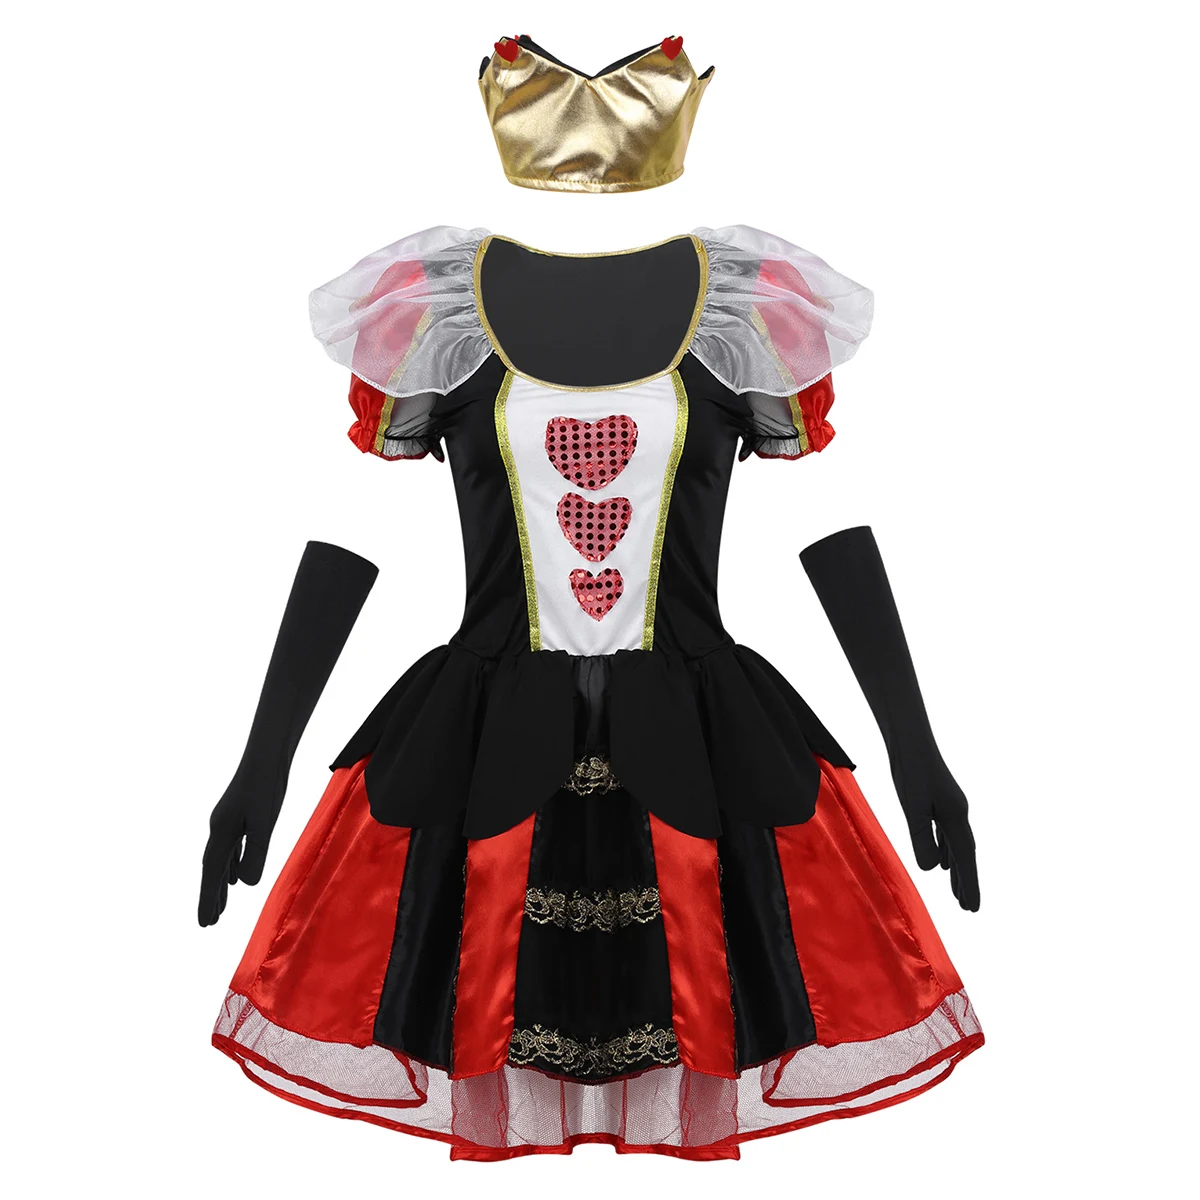 Женский костюм для взрослых королевской королевы из 3 предметов, костюм для Хэллоуин, короткий Пышный рукав, три блестящих сердца, вечерние платья с короной и перчатки - Цвет: Black